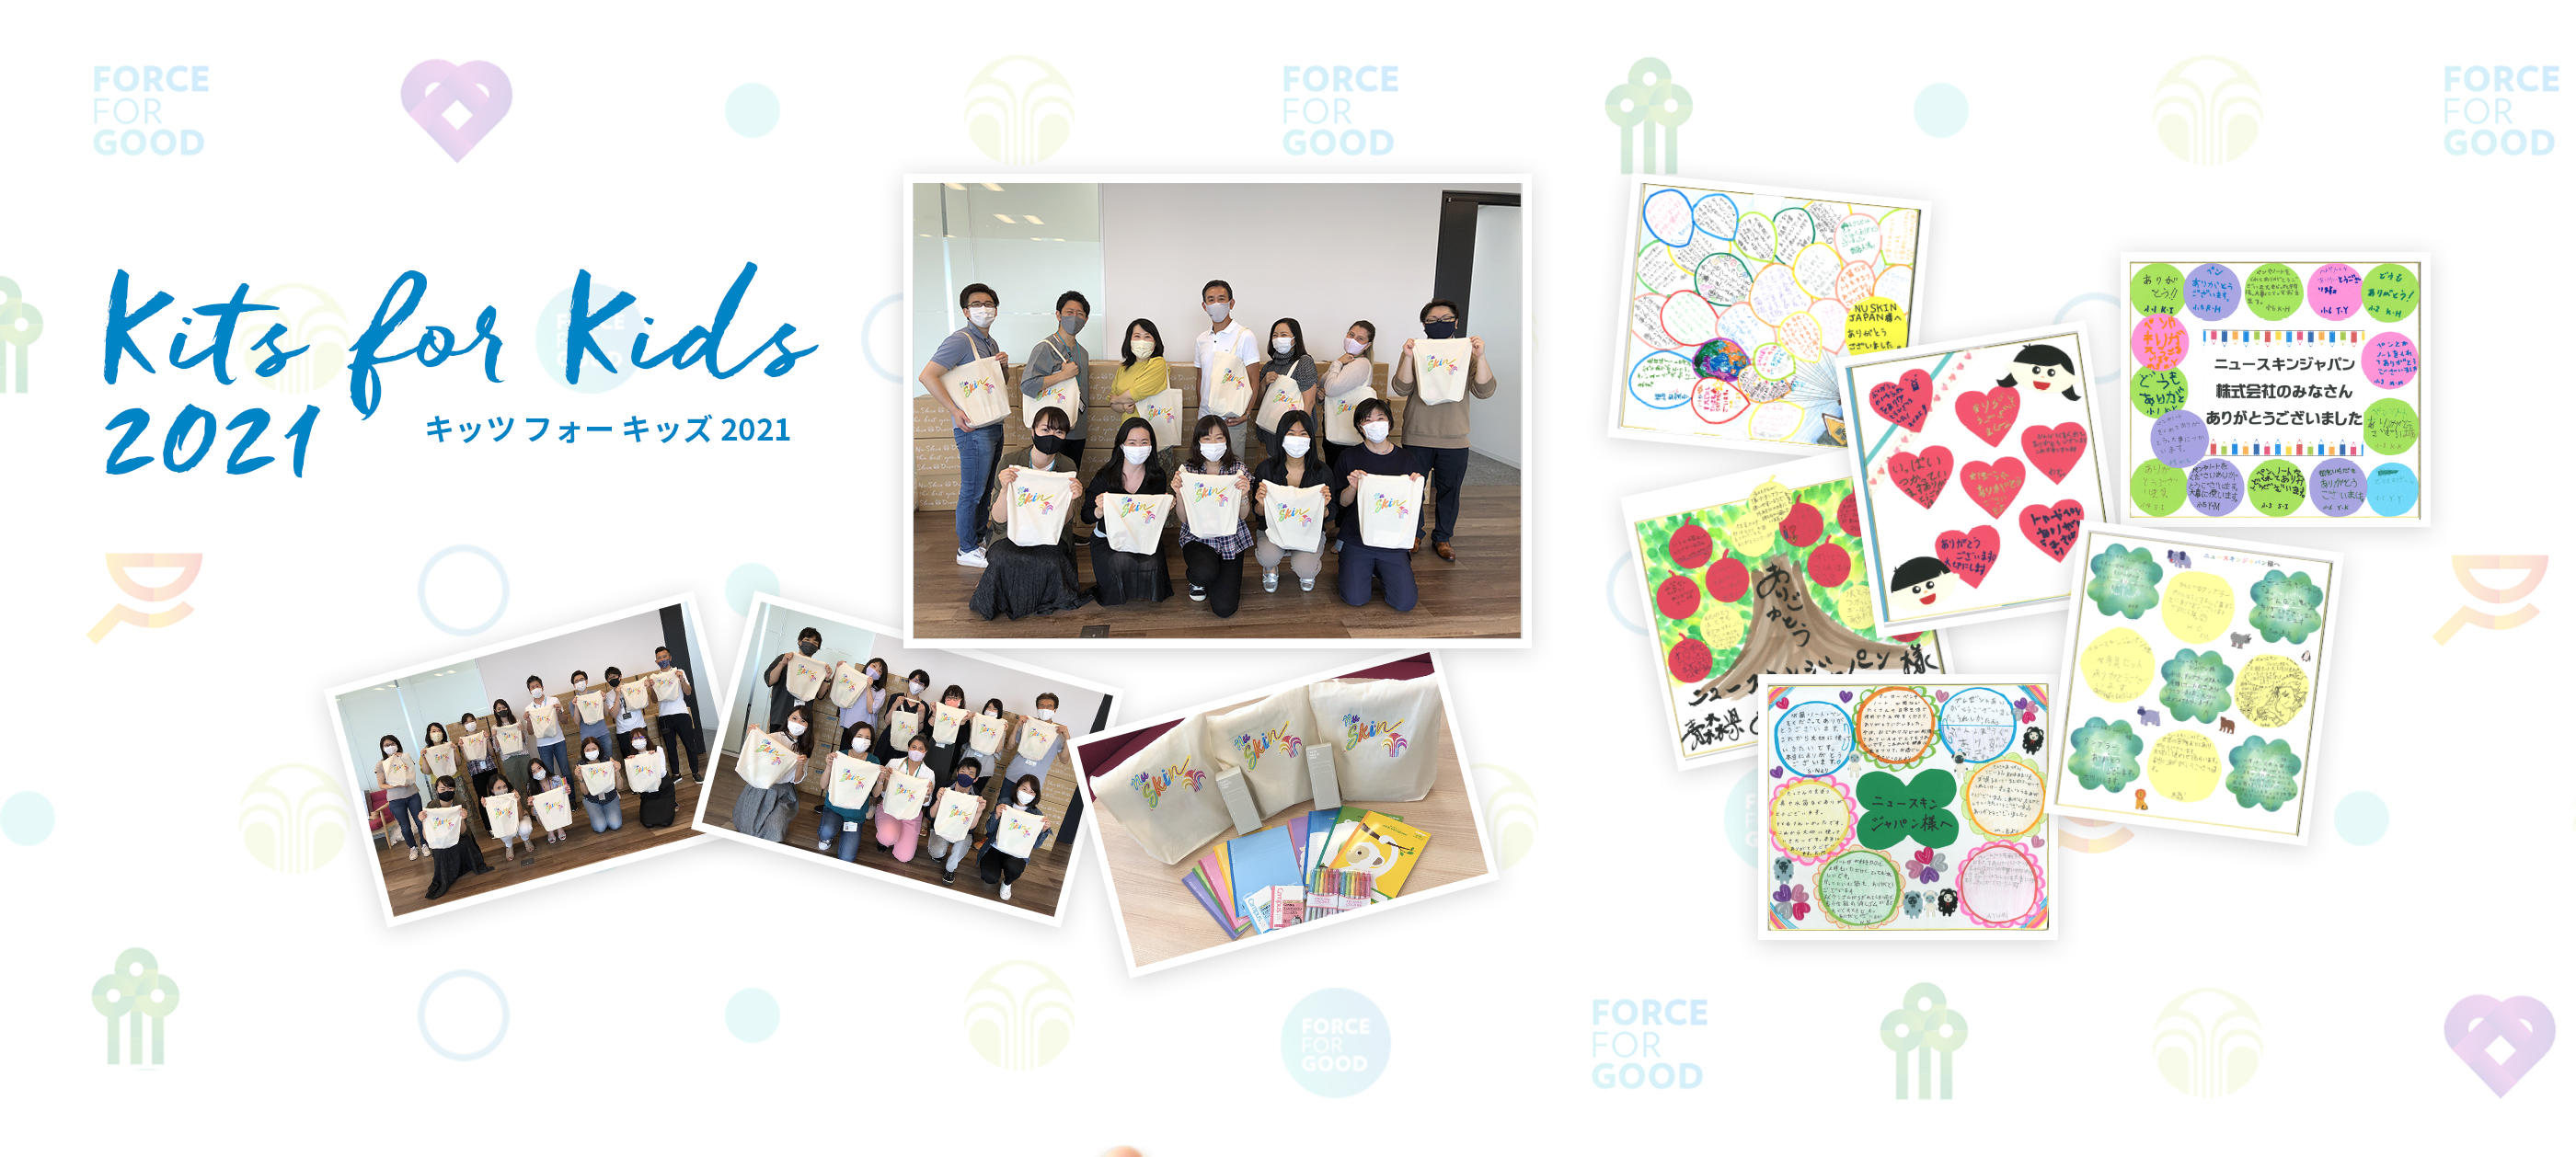 キッツ フォー キッズ プロジェクト 2021 東北6県の児童養護施設の子どもたちの笑顔のために、1,700個の文房具セットを届けました 